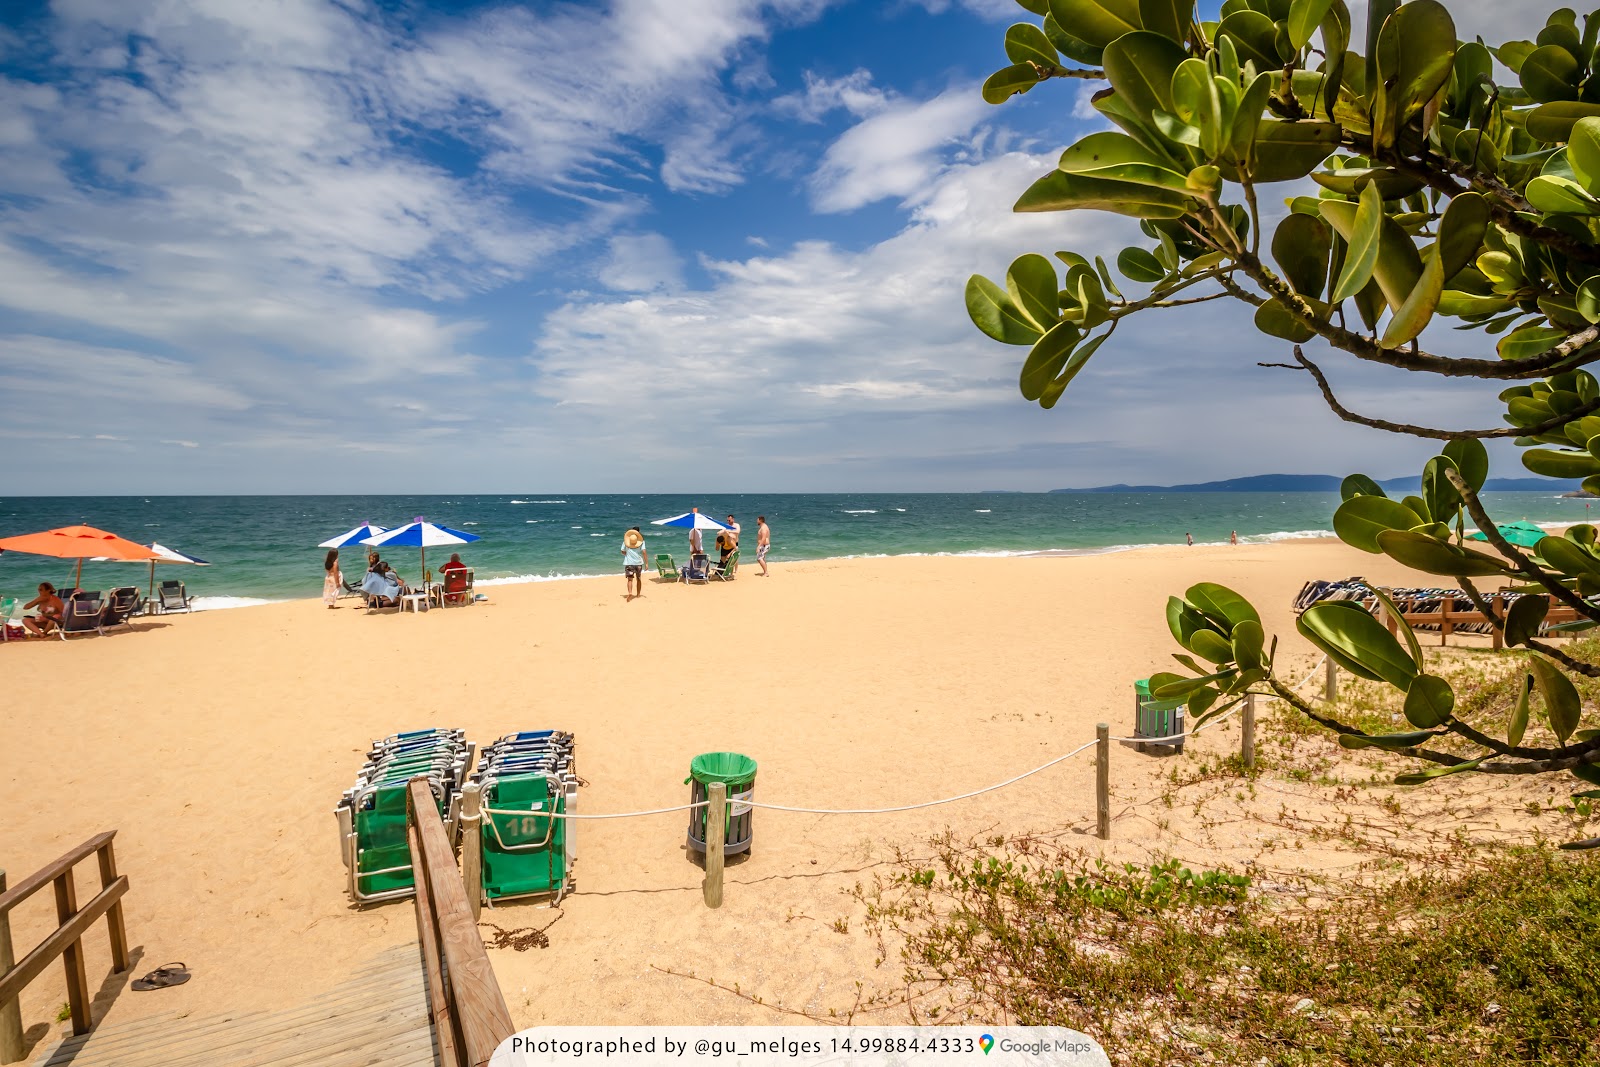 Valokuva Praia do Estaleiroista. pinnalla turkoosi puhdas vesi:n kanssa